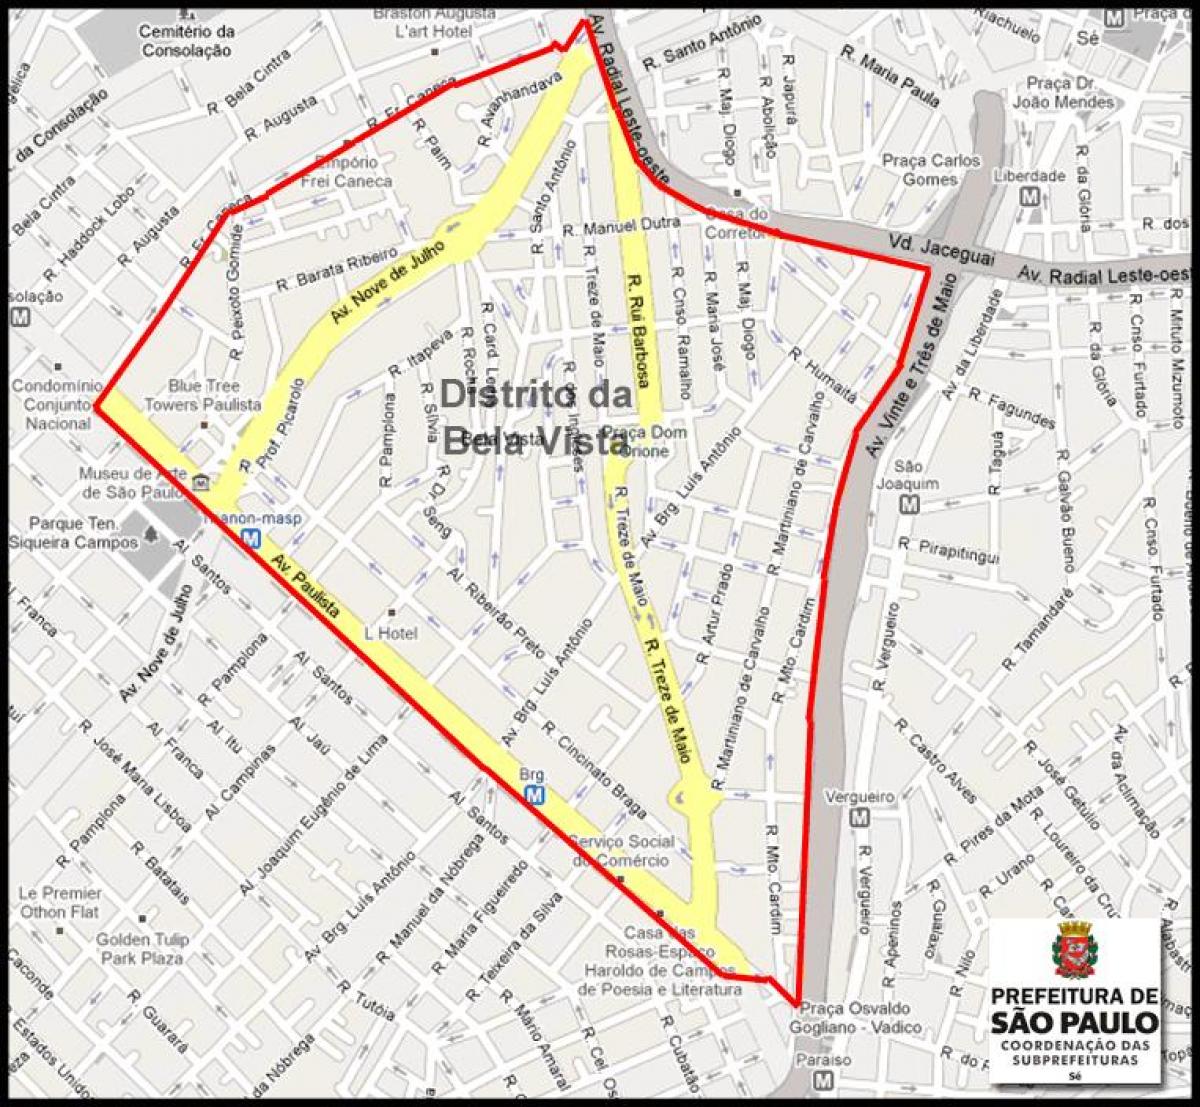 Мапа на Бела Виста São Паоло